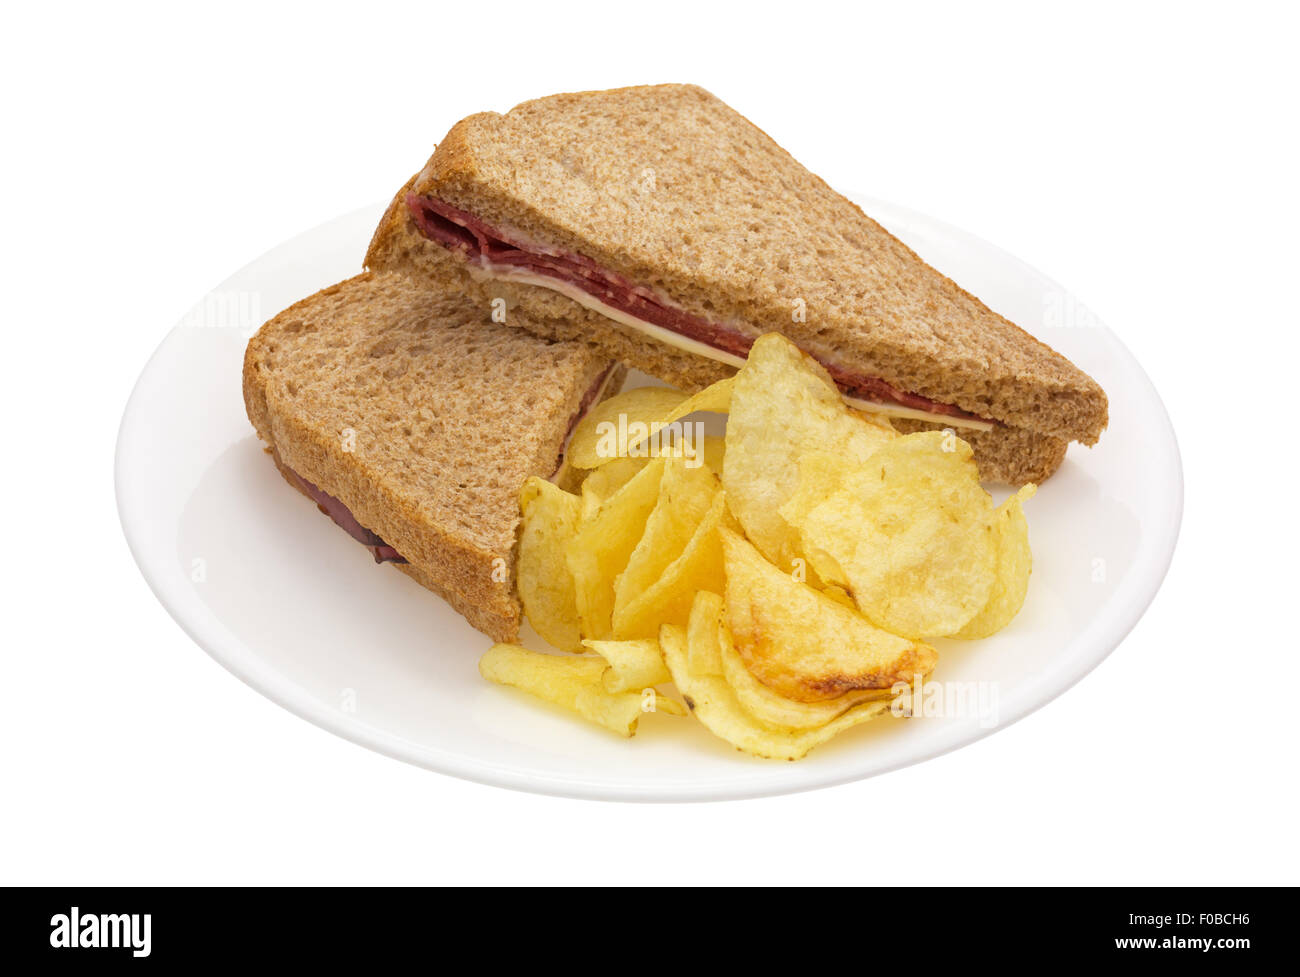 Un sandwich au rôti de bœuf avec du fromage blanc et la mayonnaise et croustilles de pommes de terre sur une plaque blanche. Banque D'Images